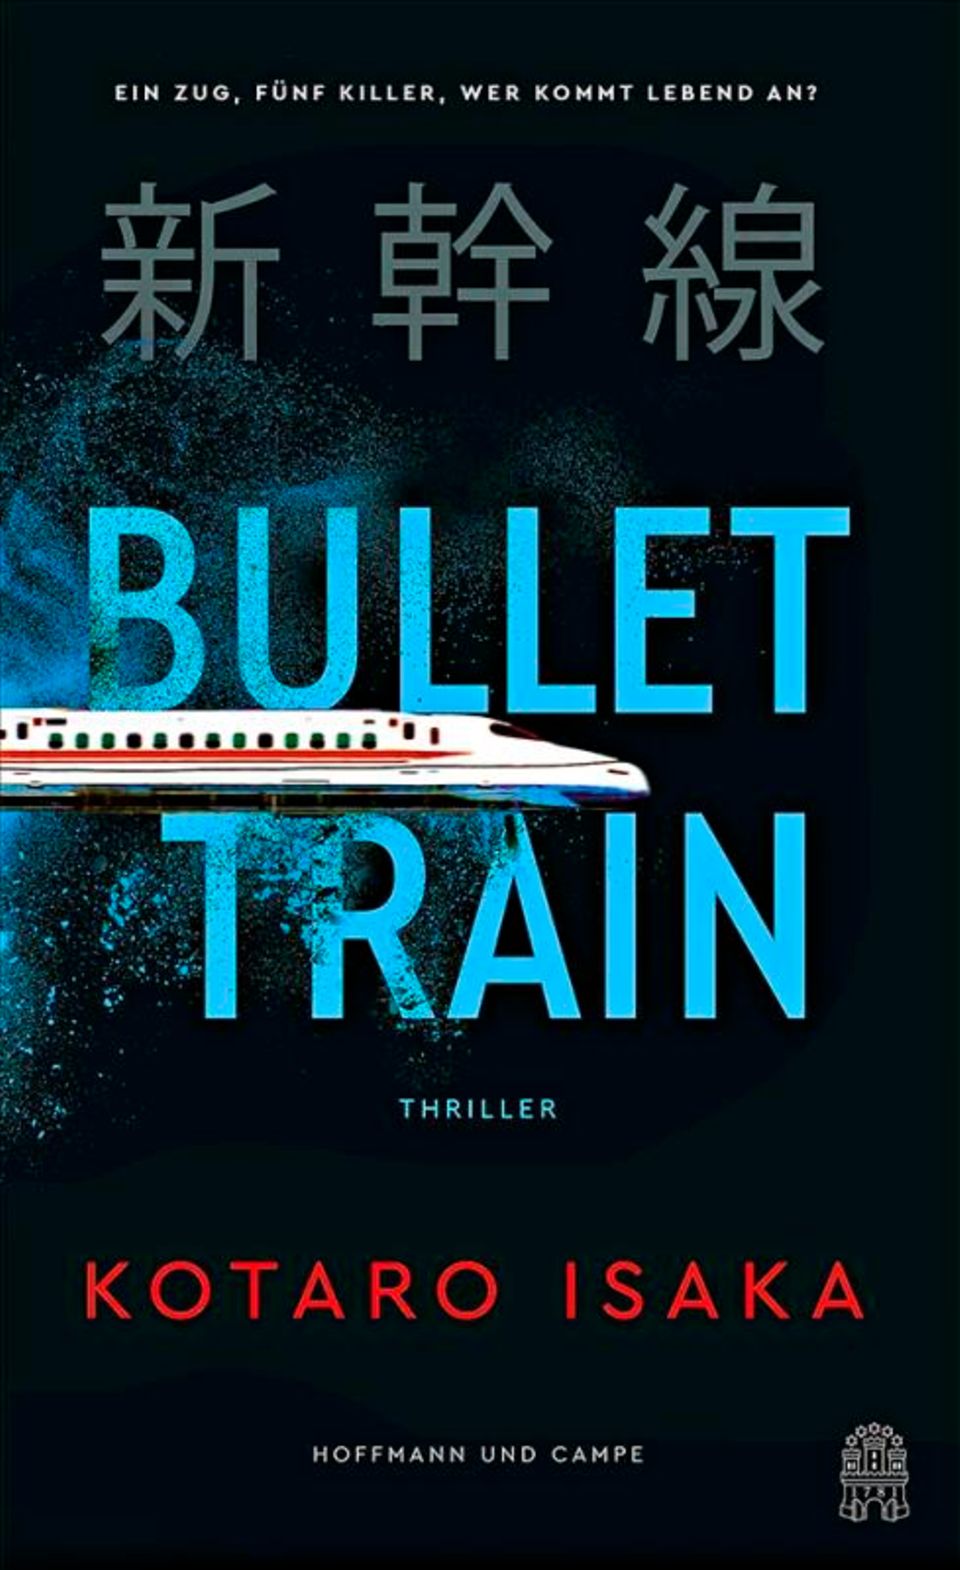 Buchtipps der Redaktion: Buchcover "Bullet Train"